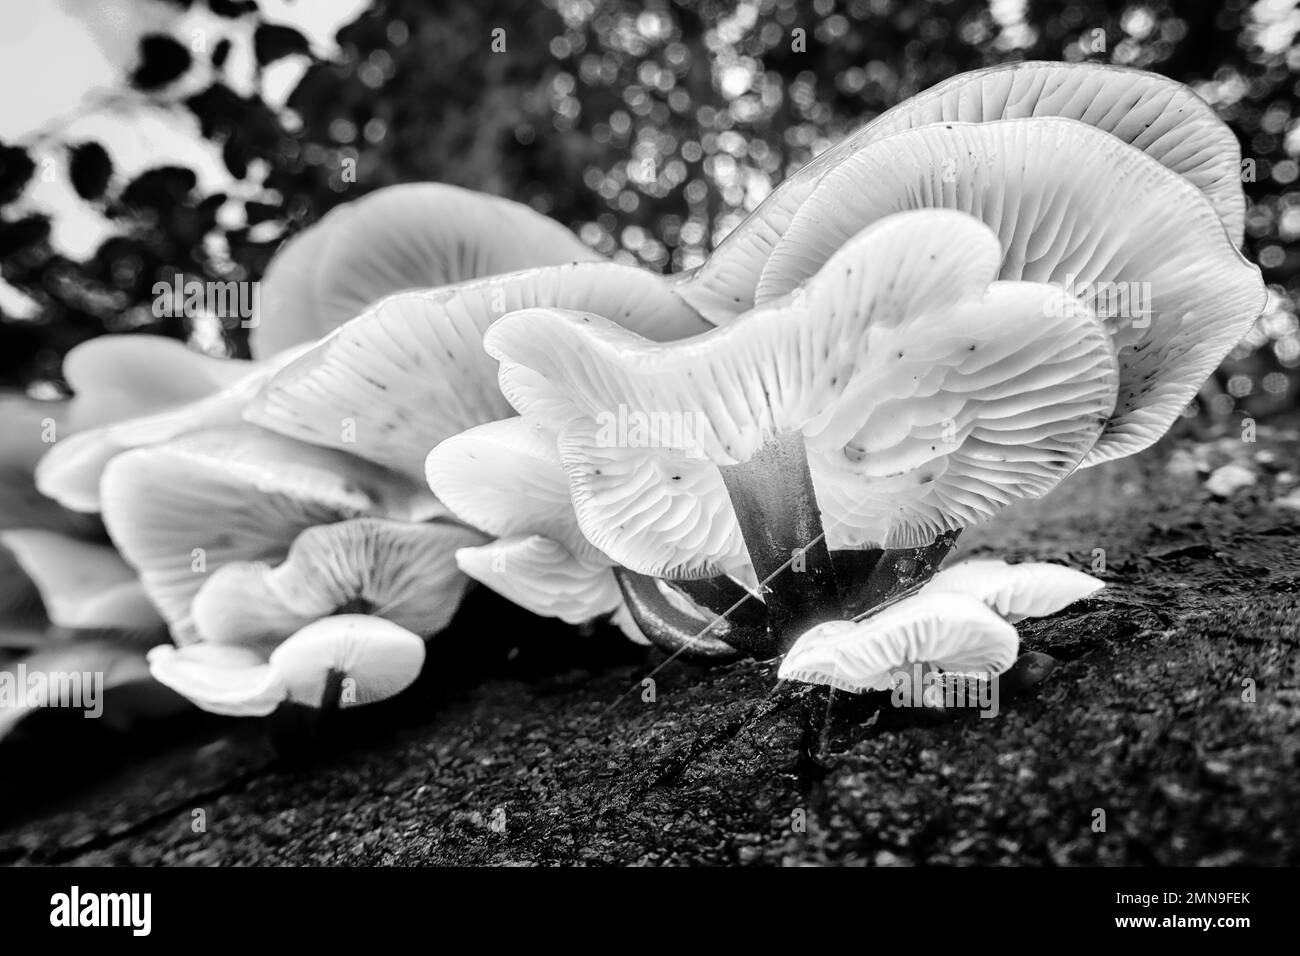 Un groupe étonnant de champignons comestibles de queue de velours Flammulina velutipes poussant sur le bois mort d'une souche d'arbre avec vue sur les branchies en noir et blanc. ROYAUME-UNI Banque D'Images